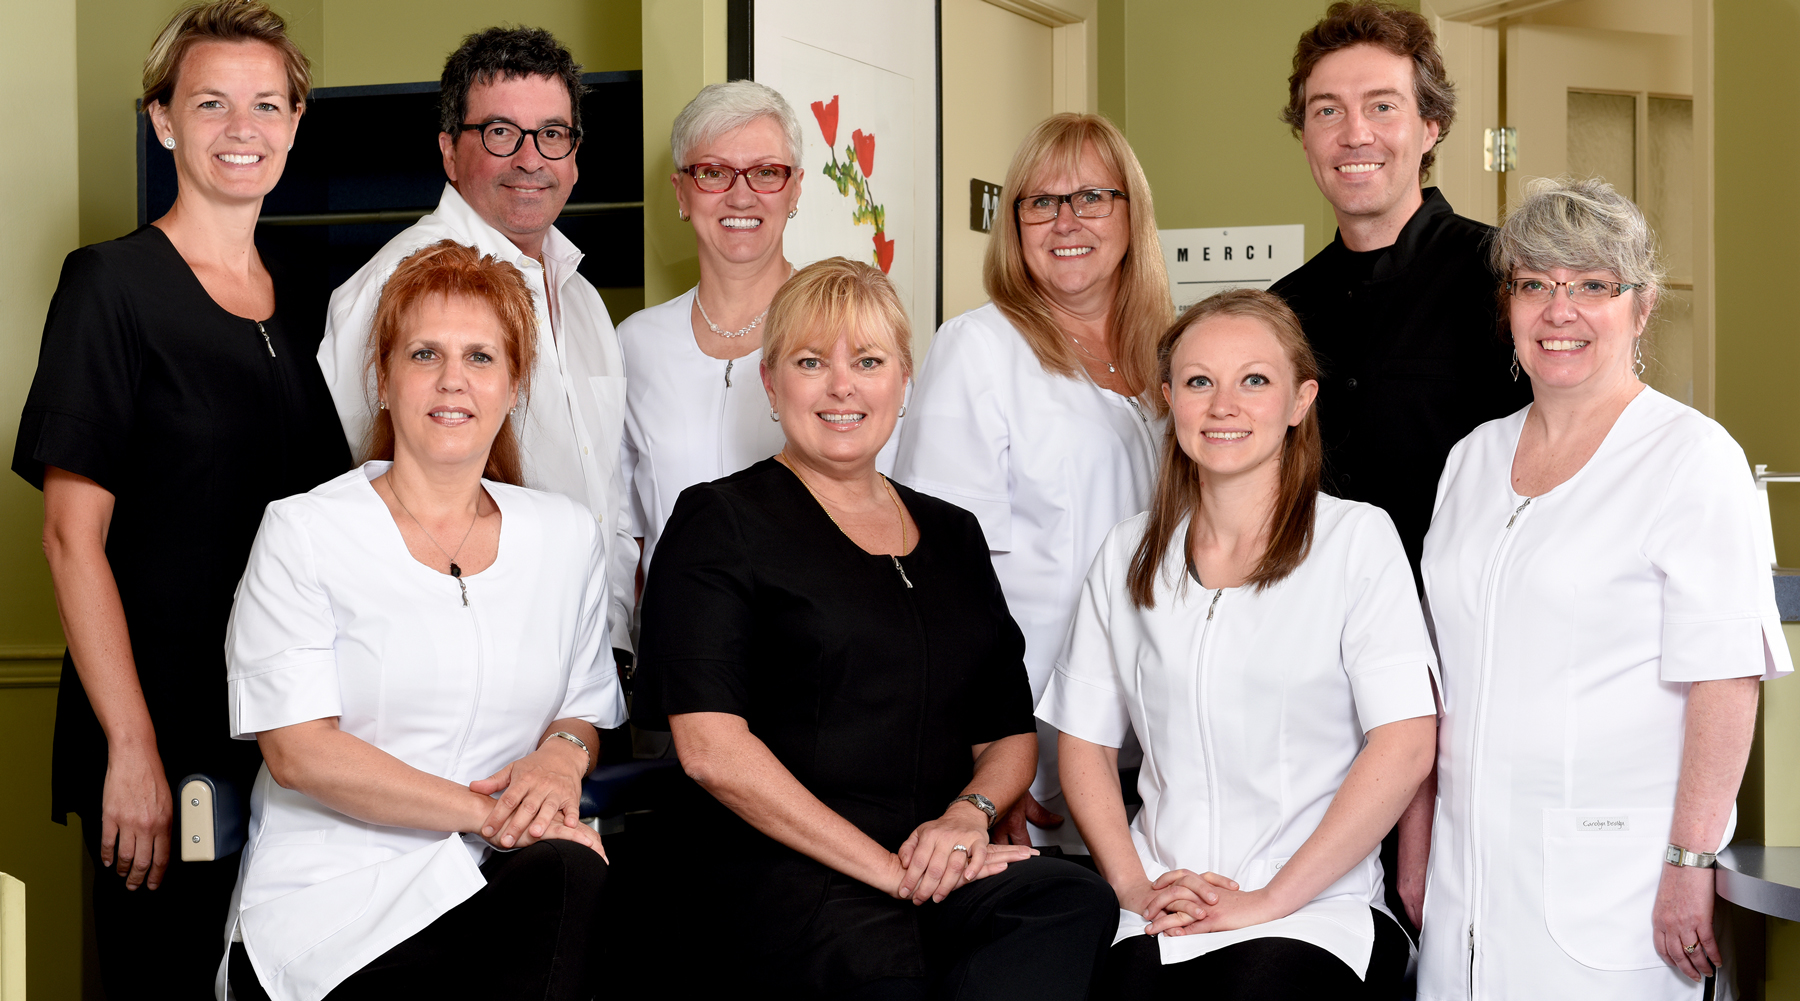 L'équipe de professionnels qui rend la dentisterie accessible et humaine.